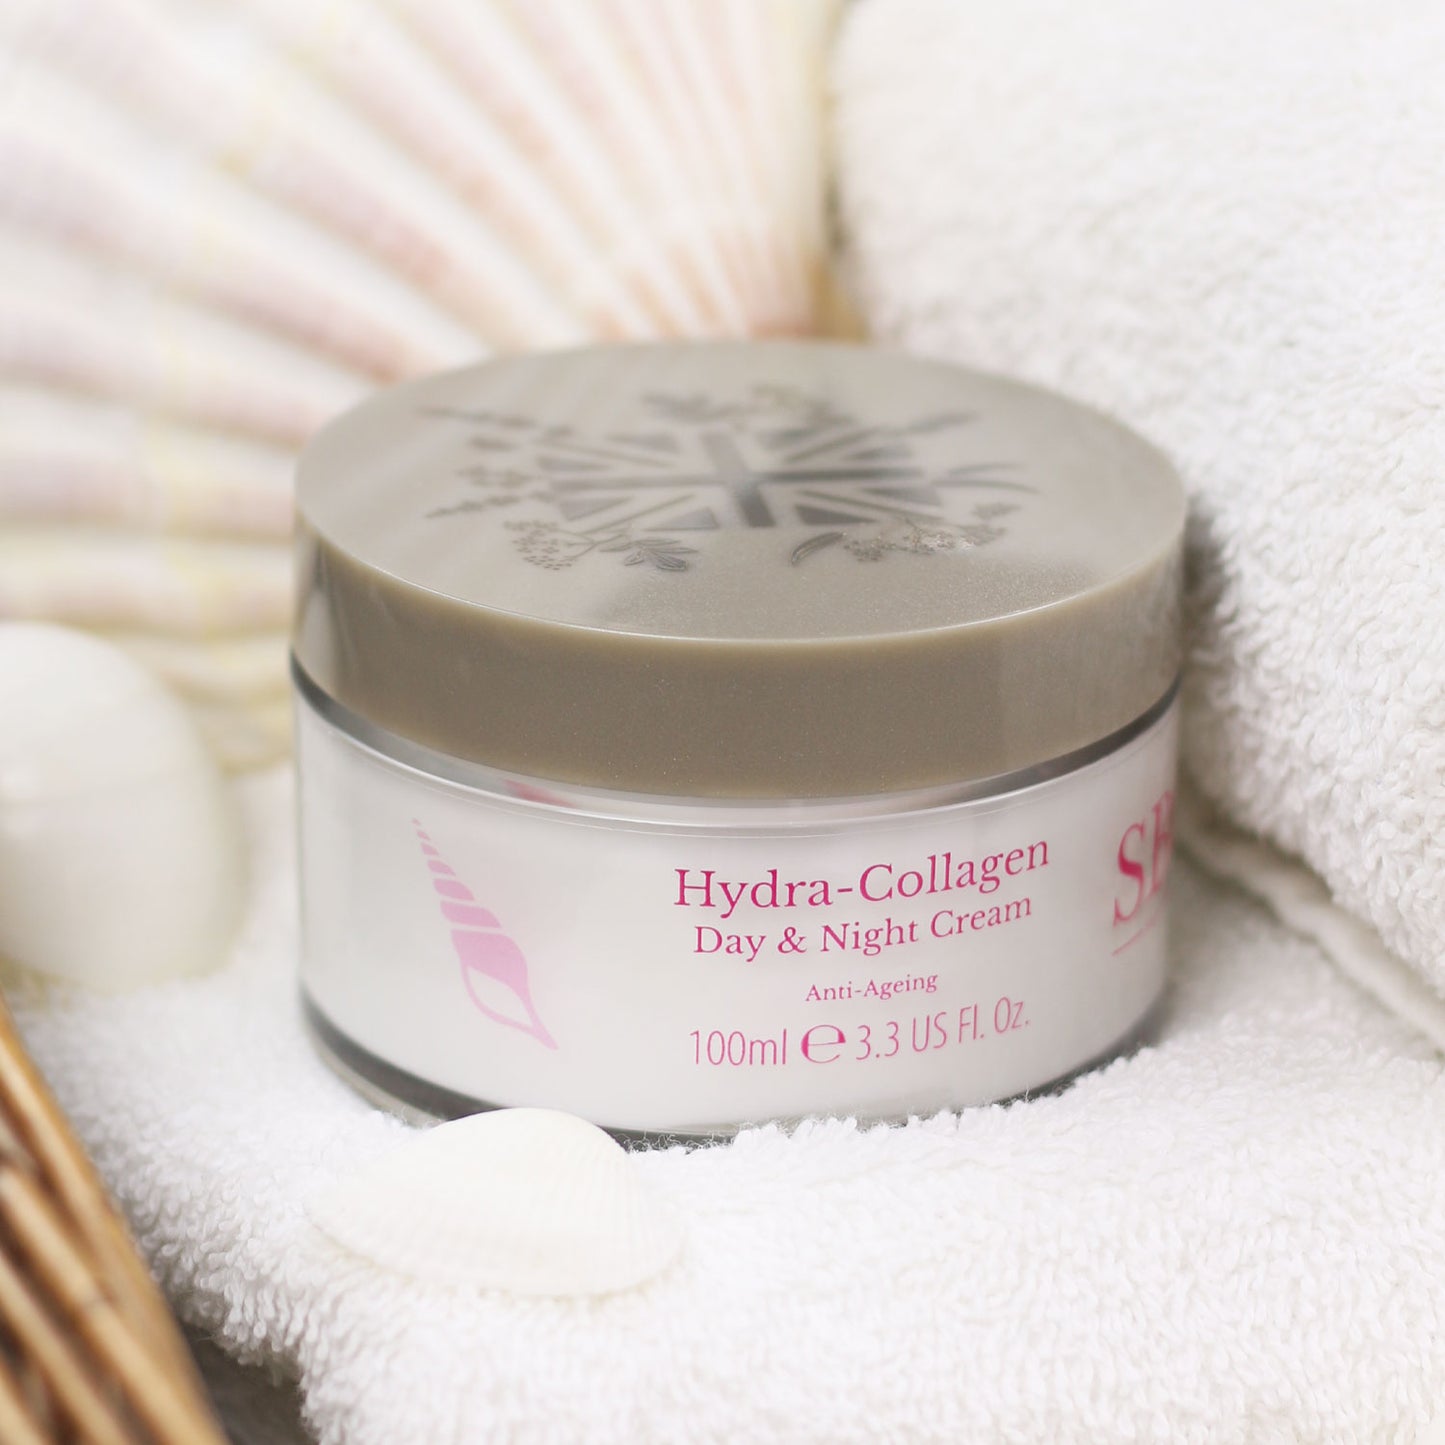 Hydra-Collagen Day & Night Cream